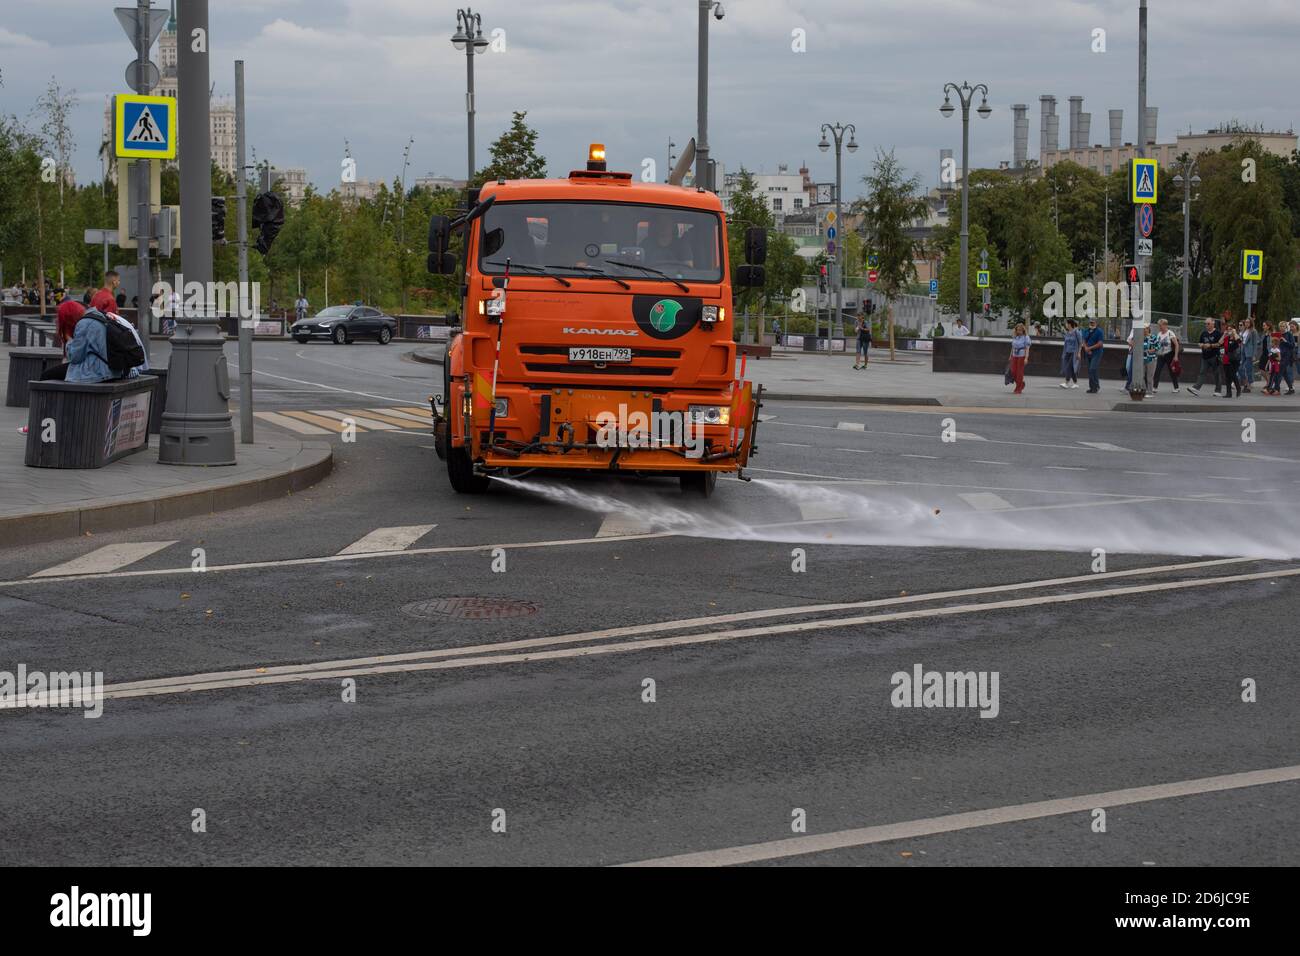 Mosca, Russia - 24 agosto 2020: Grande irrigatore arancione che attraversa un incrocio. Pulizia della strada della città di shanumen e wate Foto Stock